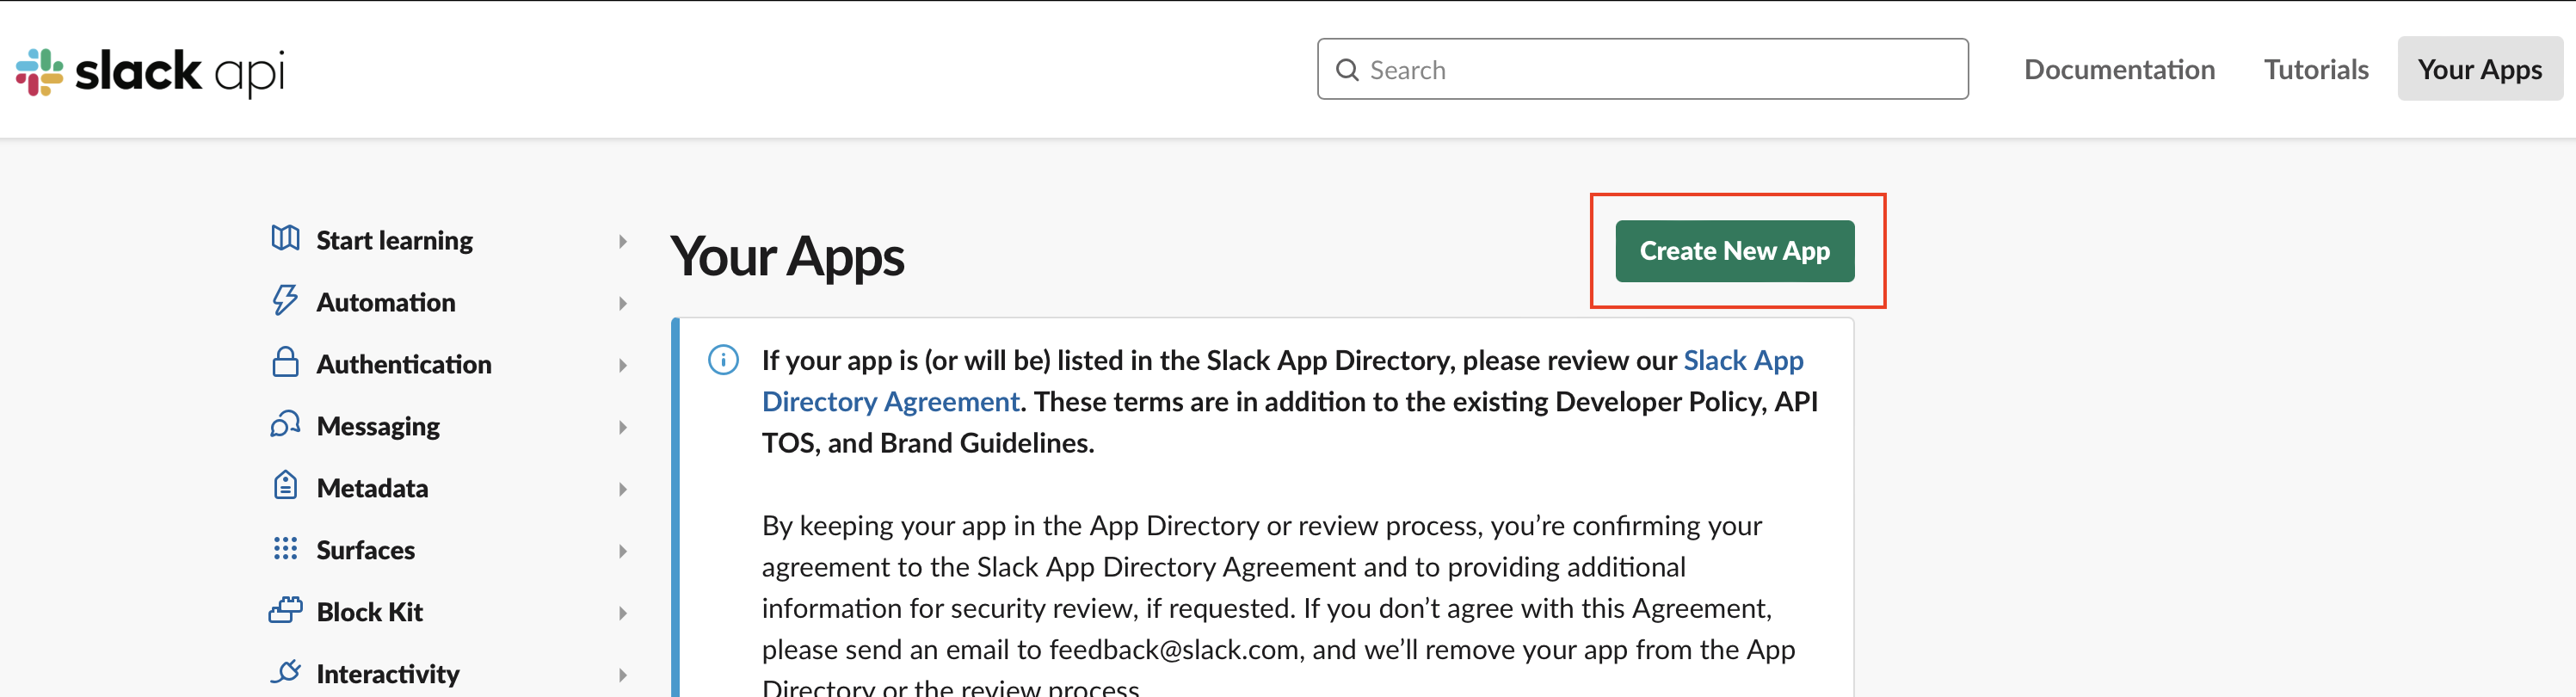 Slack create new app